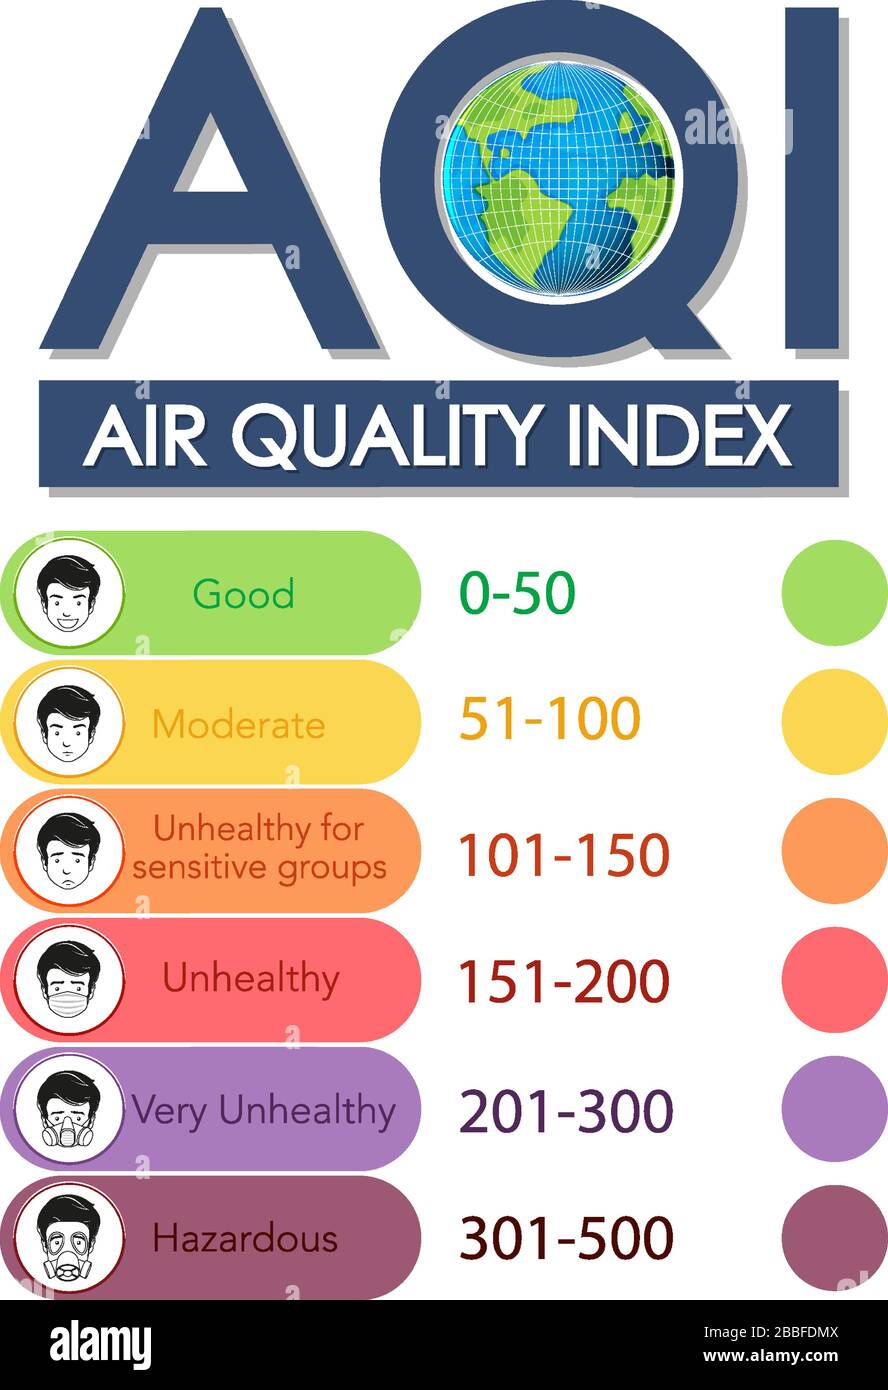 Diseño de póster para el índice de calidad del aire con ilustración de escalas de color Ilustración del Vector